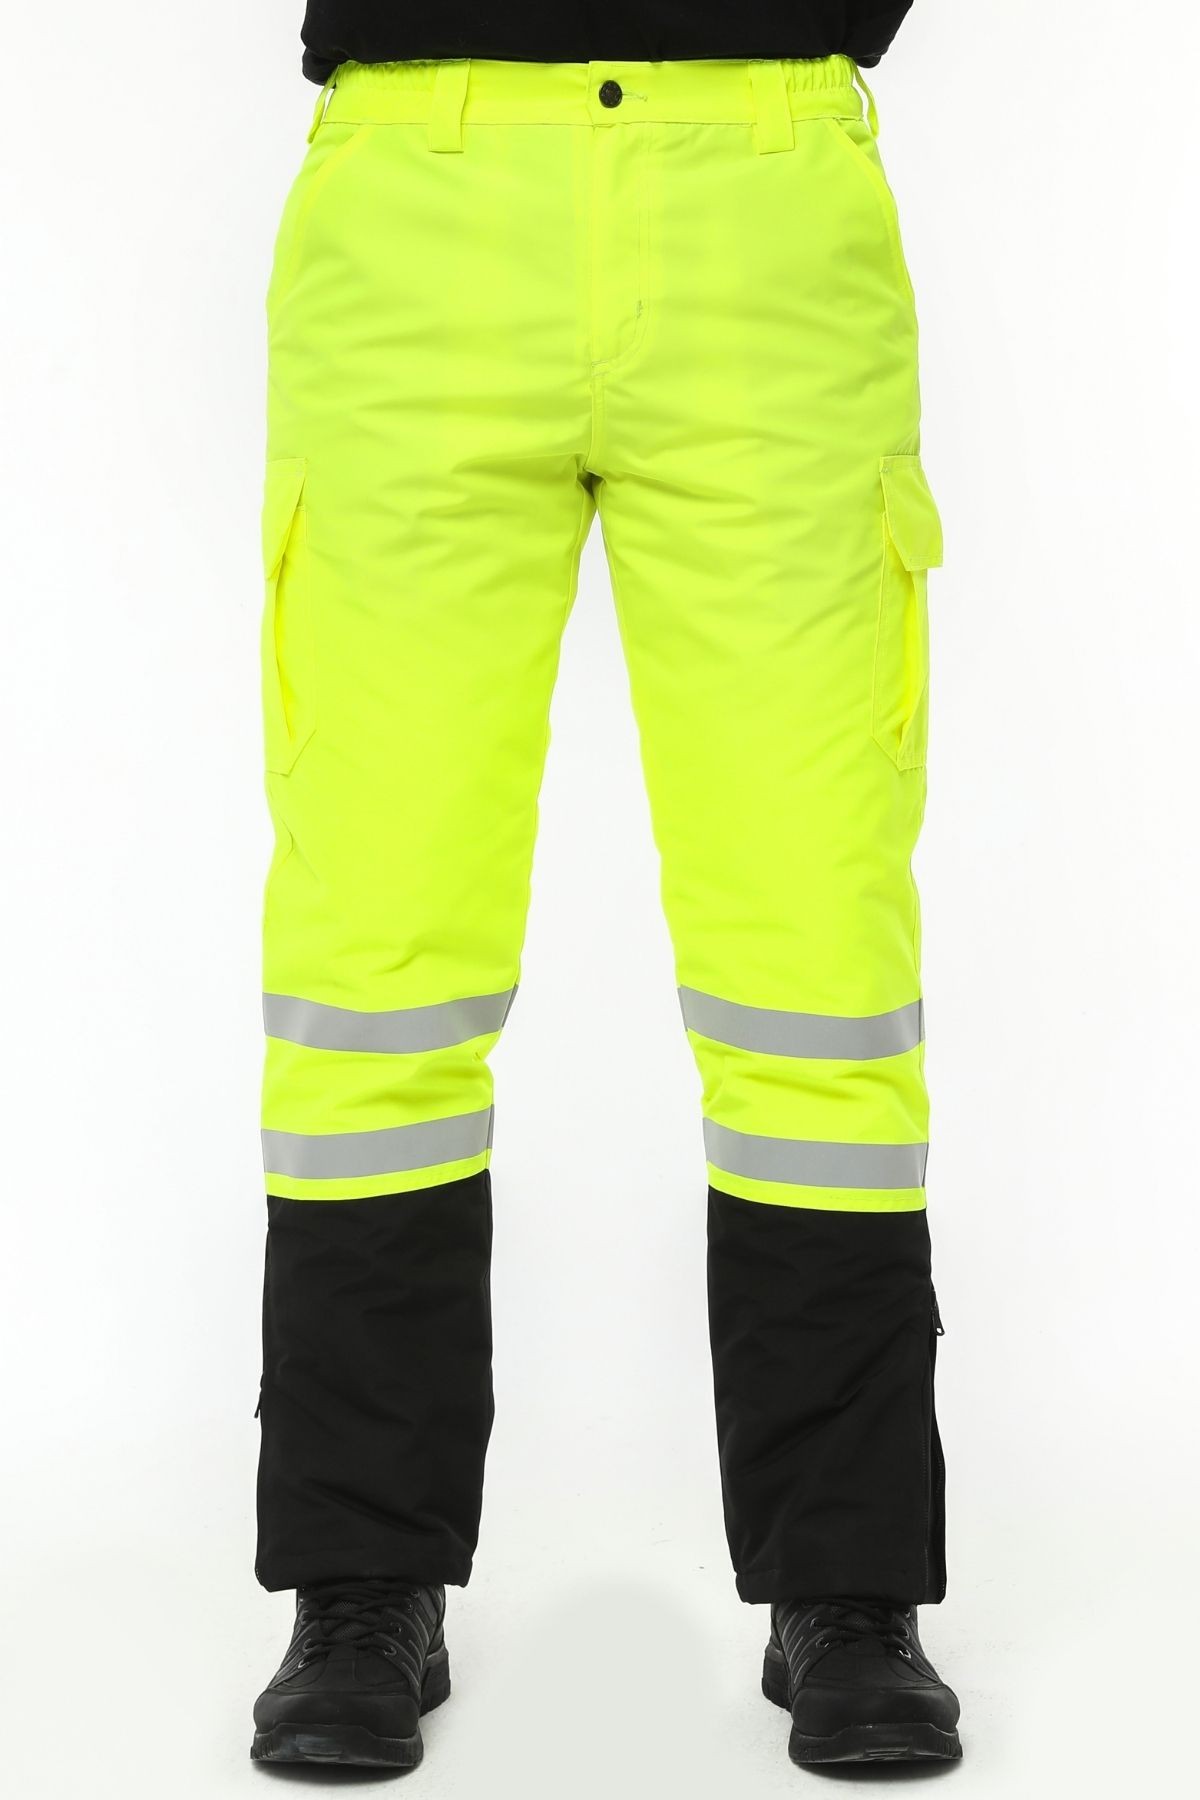 Uniprom İş Pantolonu Su ve Rüzgar Geçirmez İçi Elyaflı Kışlık Erkek Neon Sarı